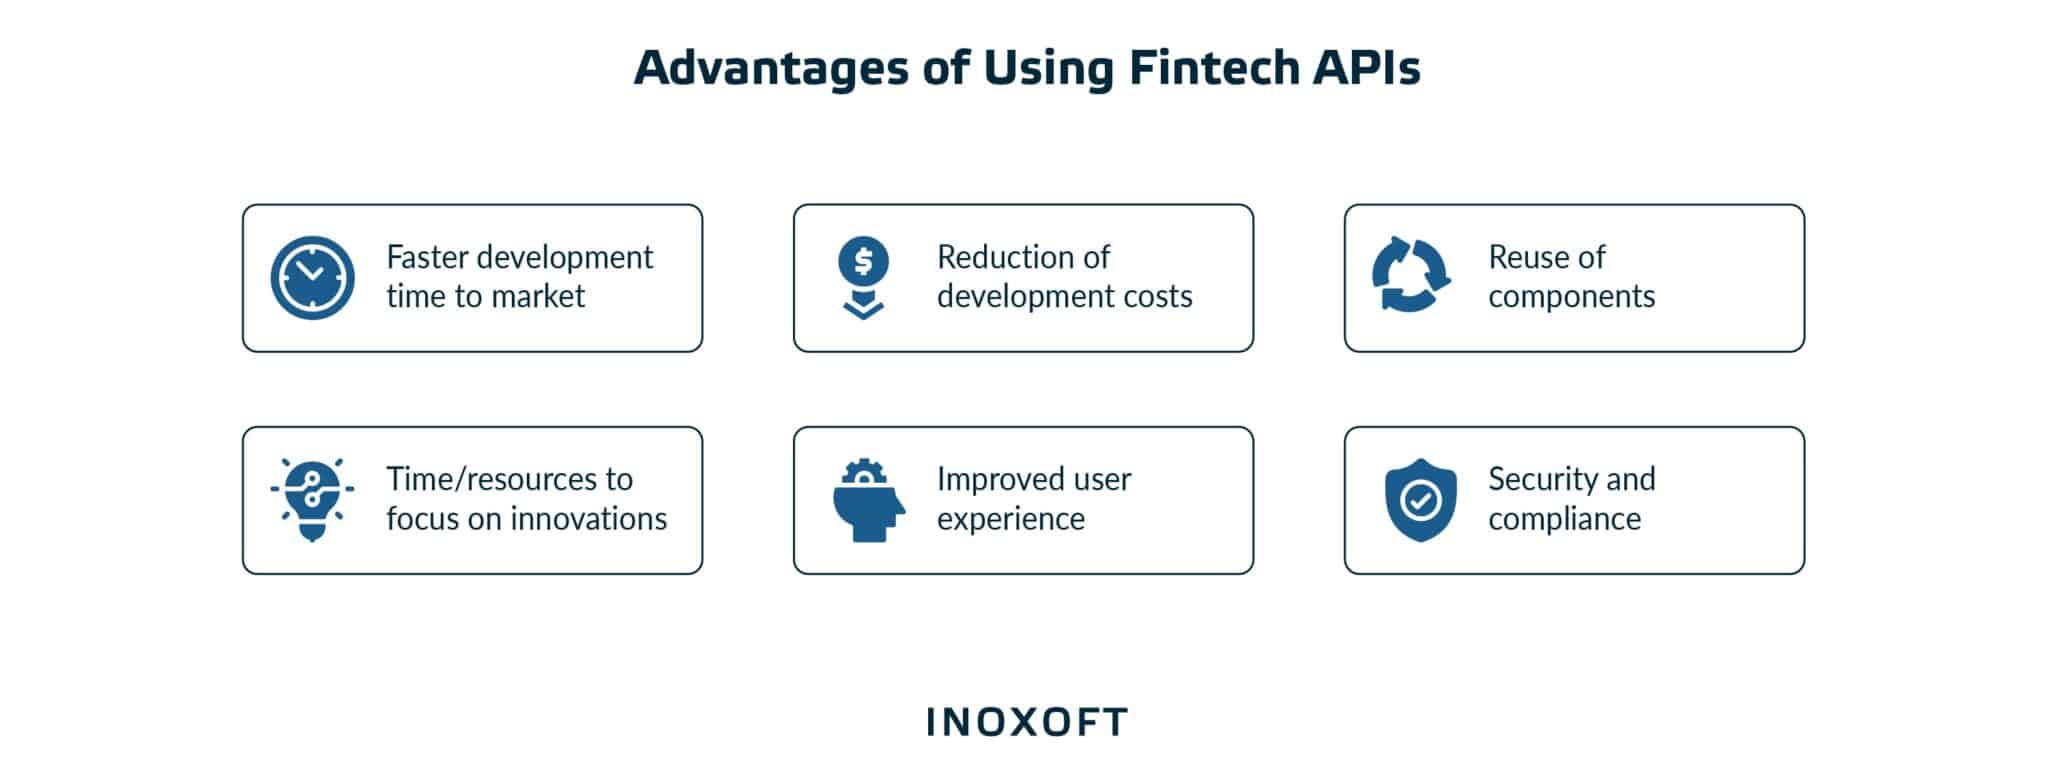 Advantages of Using Fintech APIs